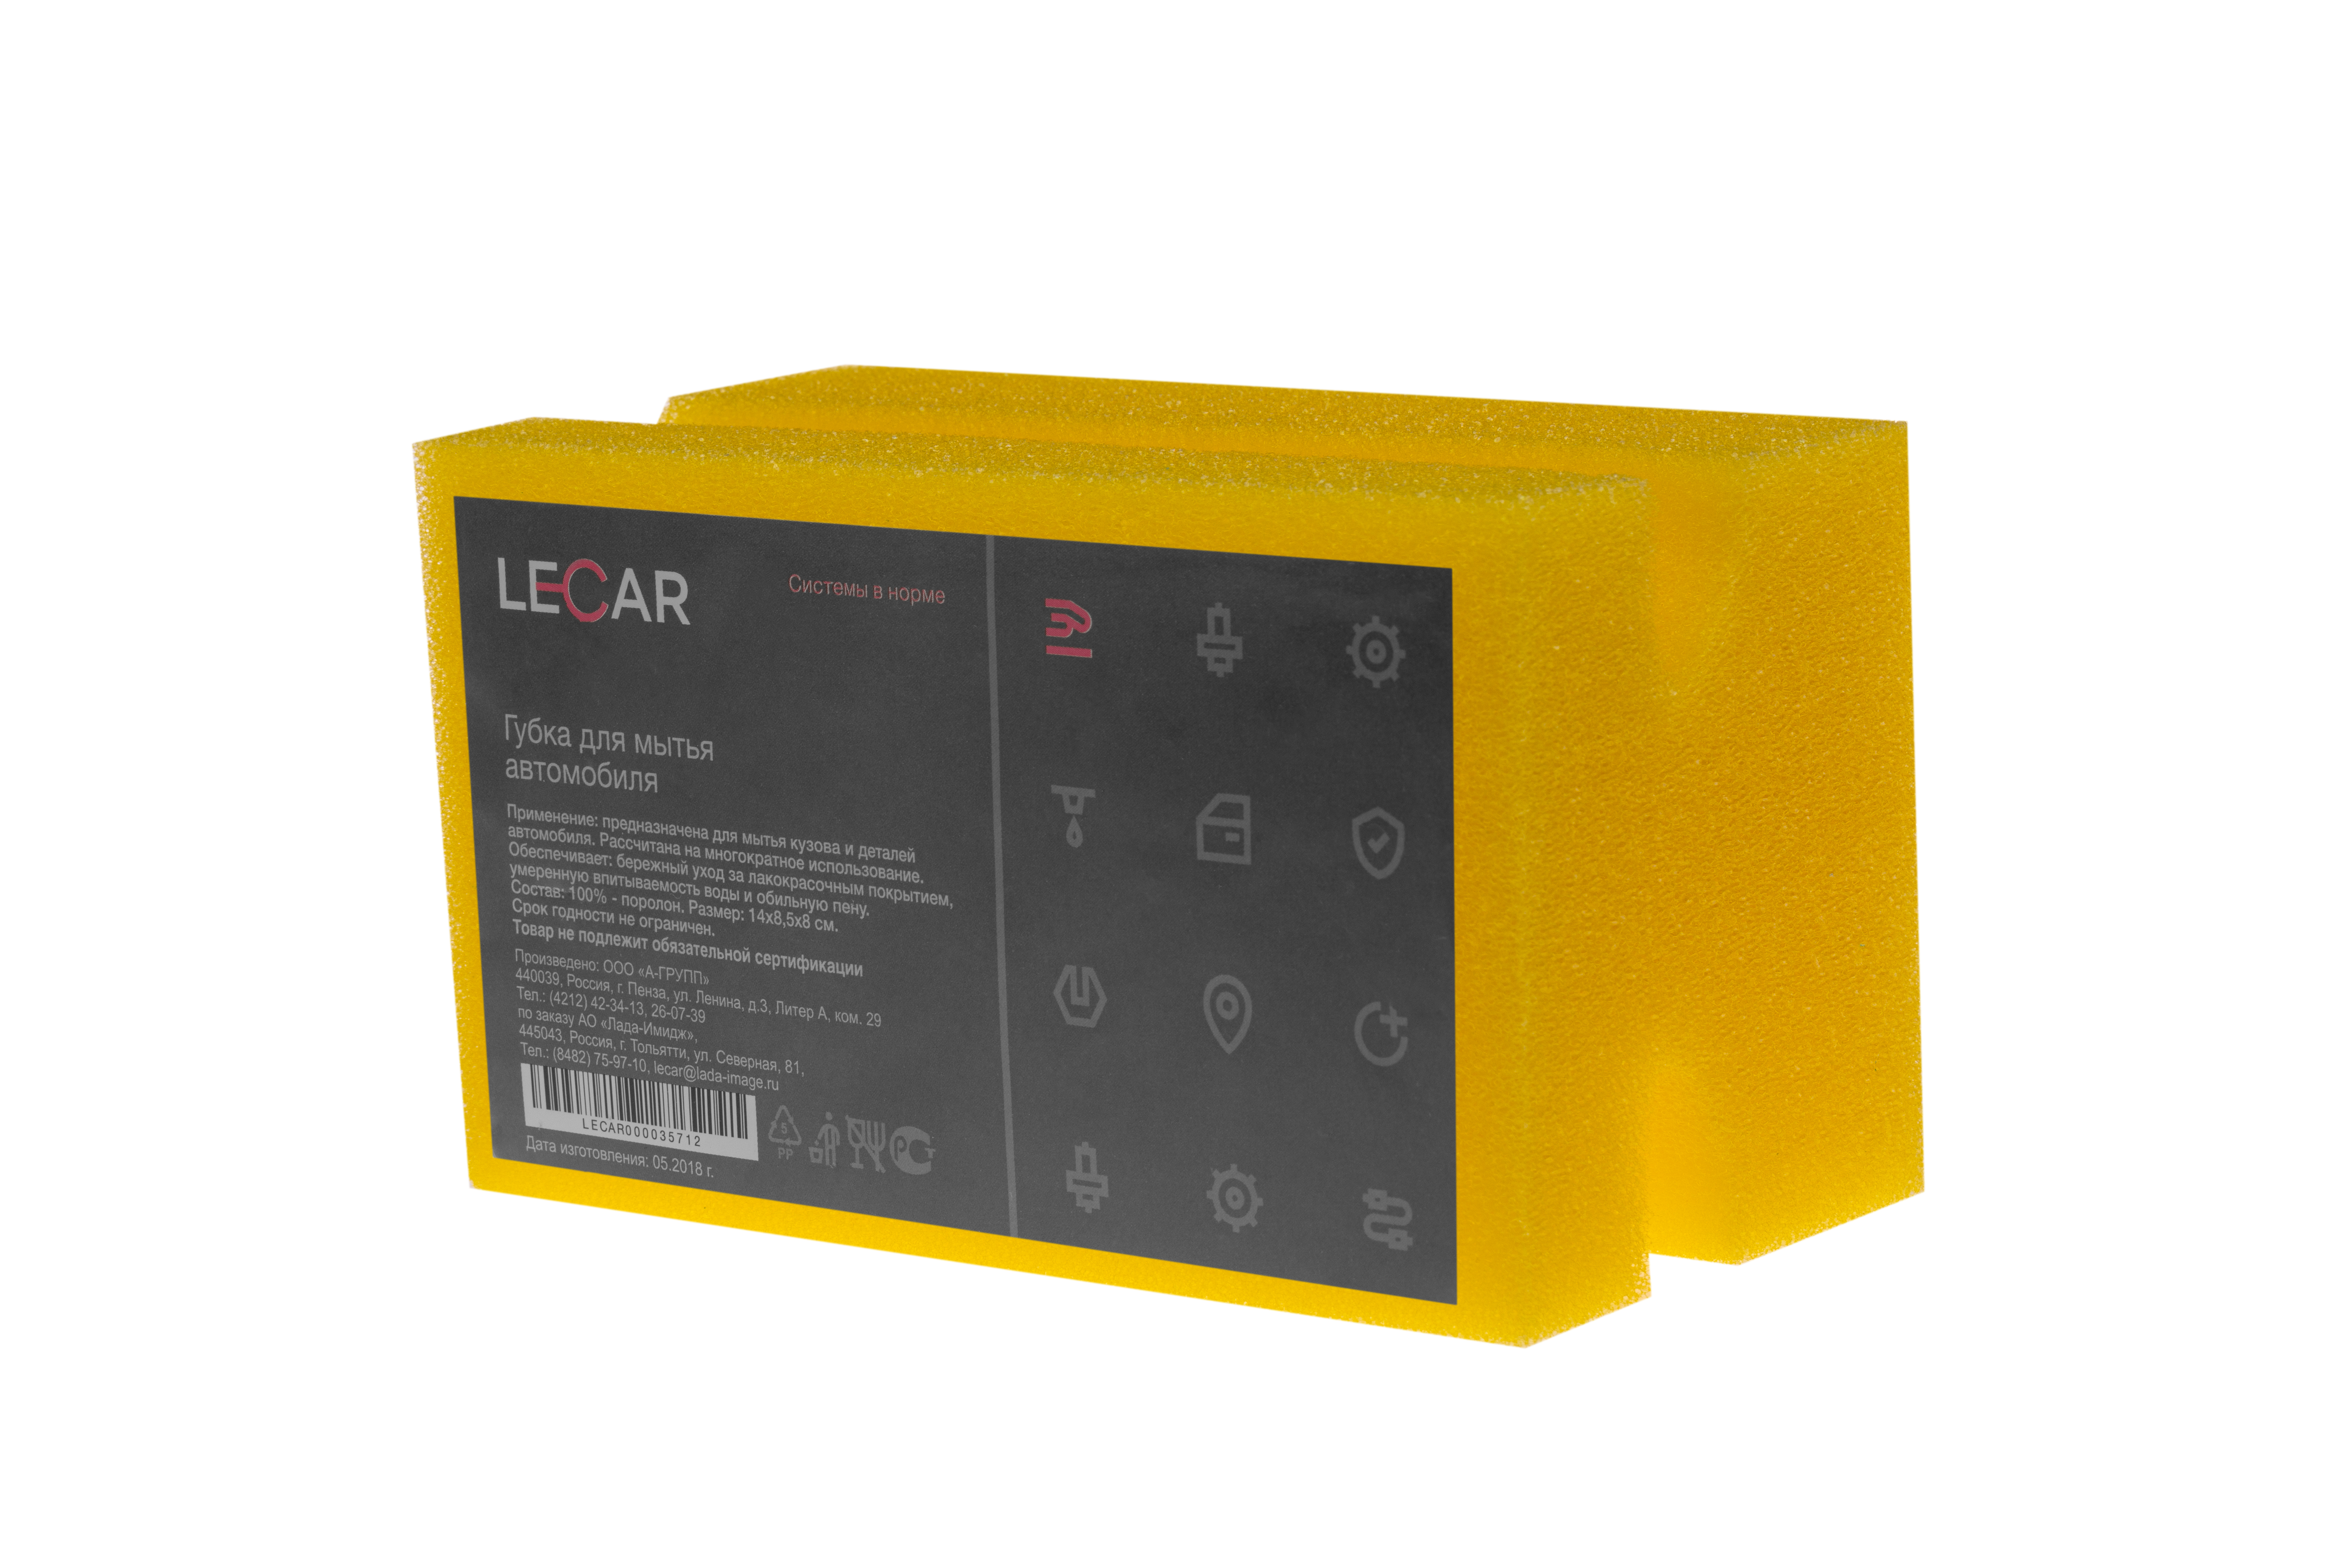 Губка lecar Фигурная (цвет желтый) - LECAR LECAR000035712